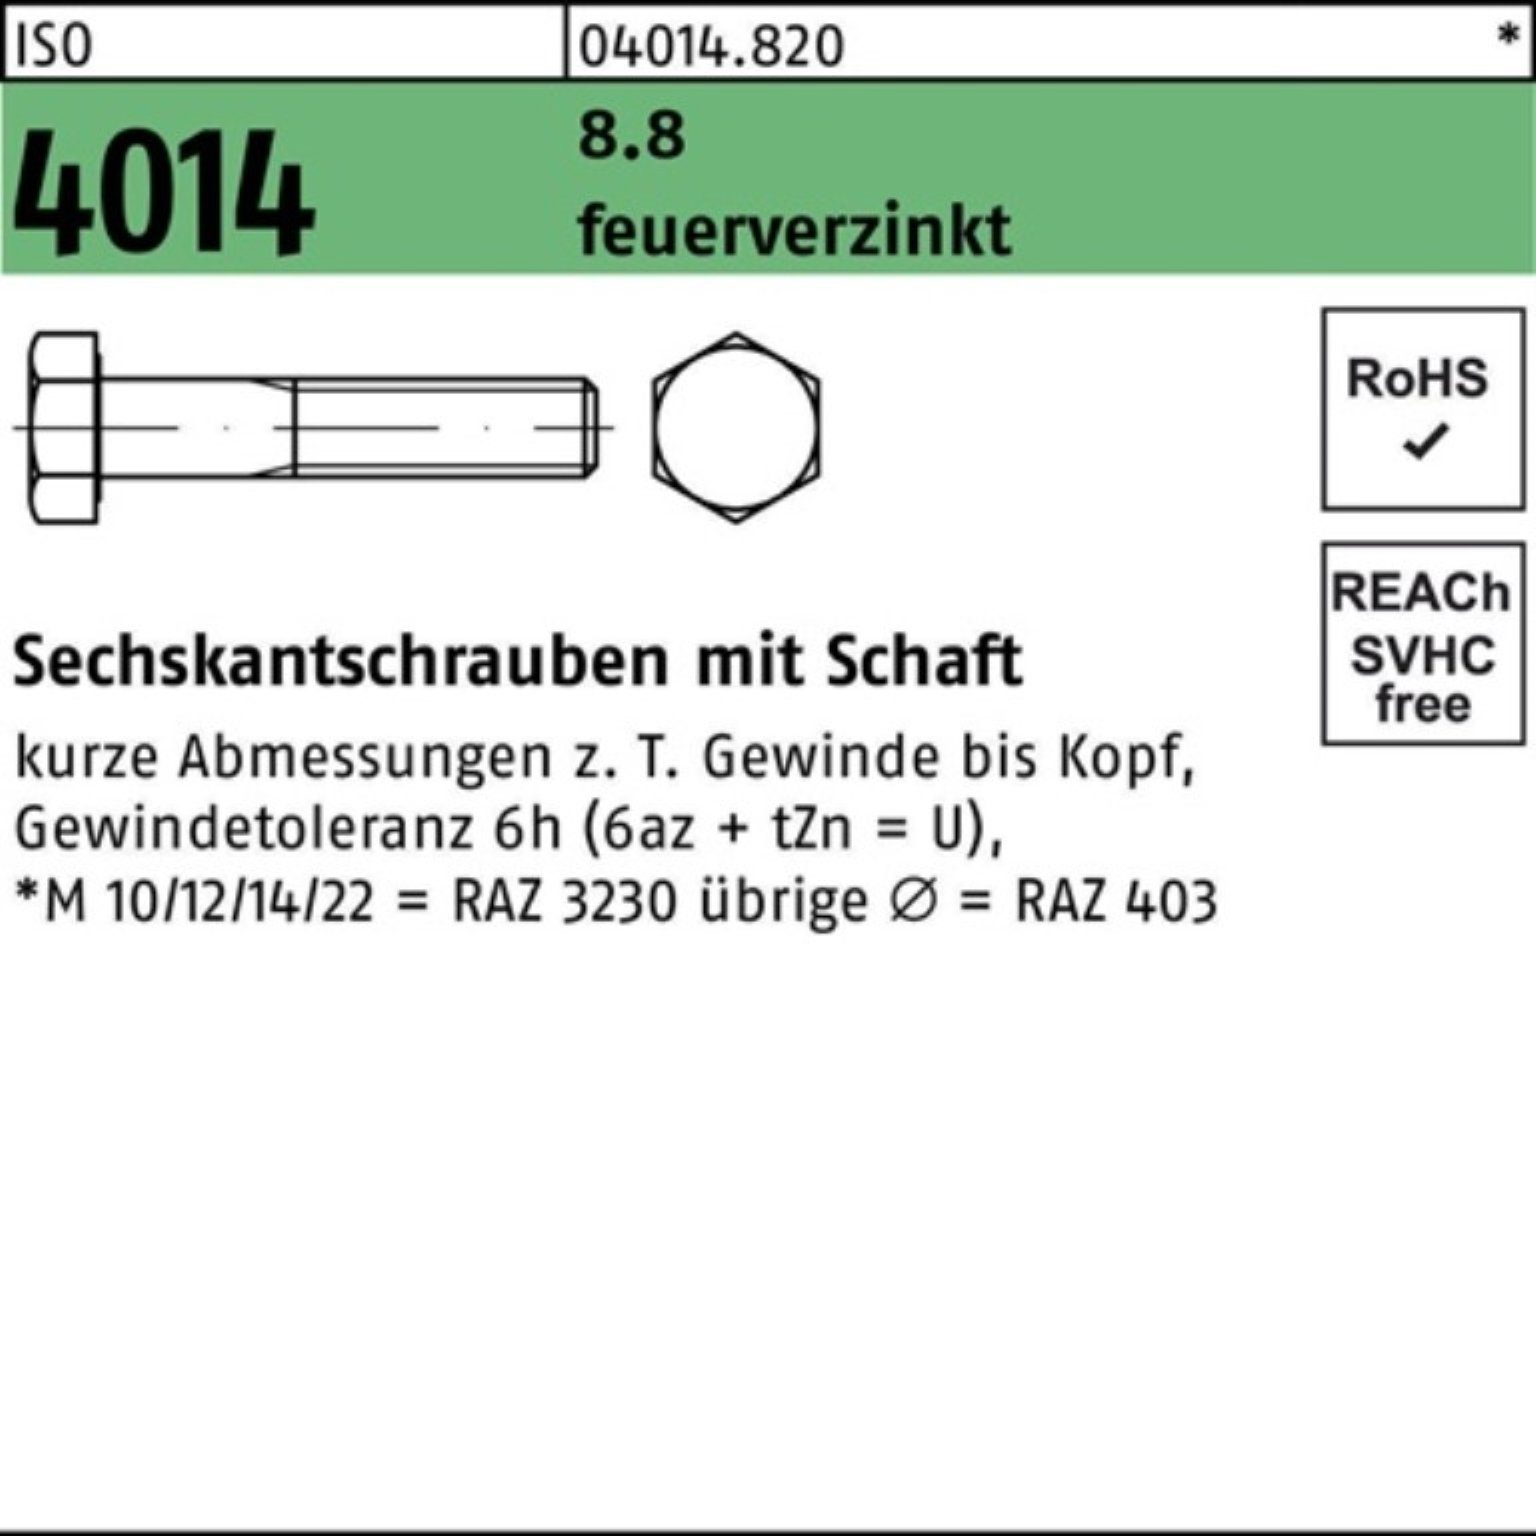 Bufab Sechskantschraube 100er Pack Sechskantschraube M20x 8.8 70 25 Schaft 4014 ISO feuerverz